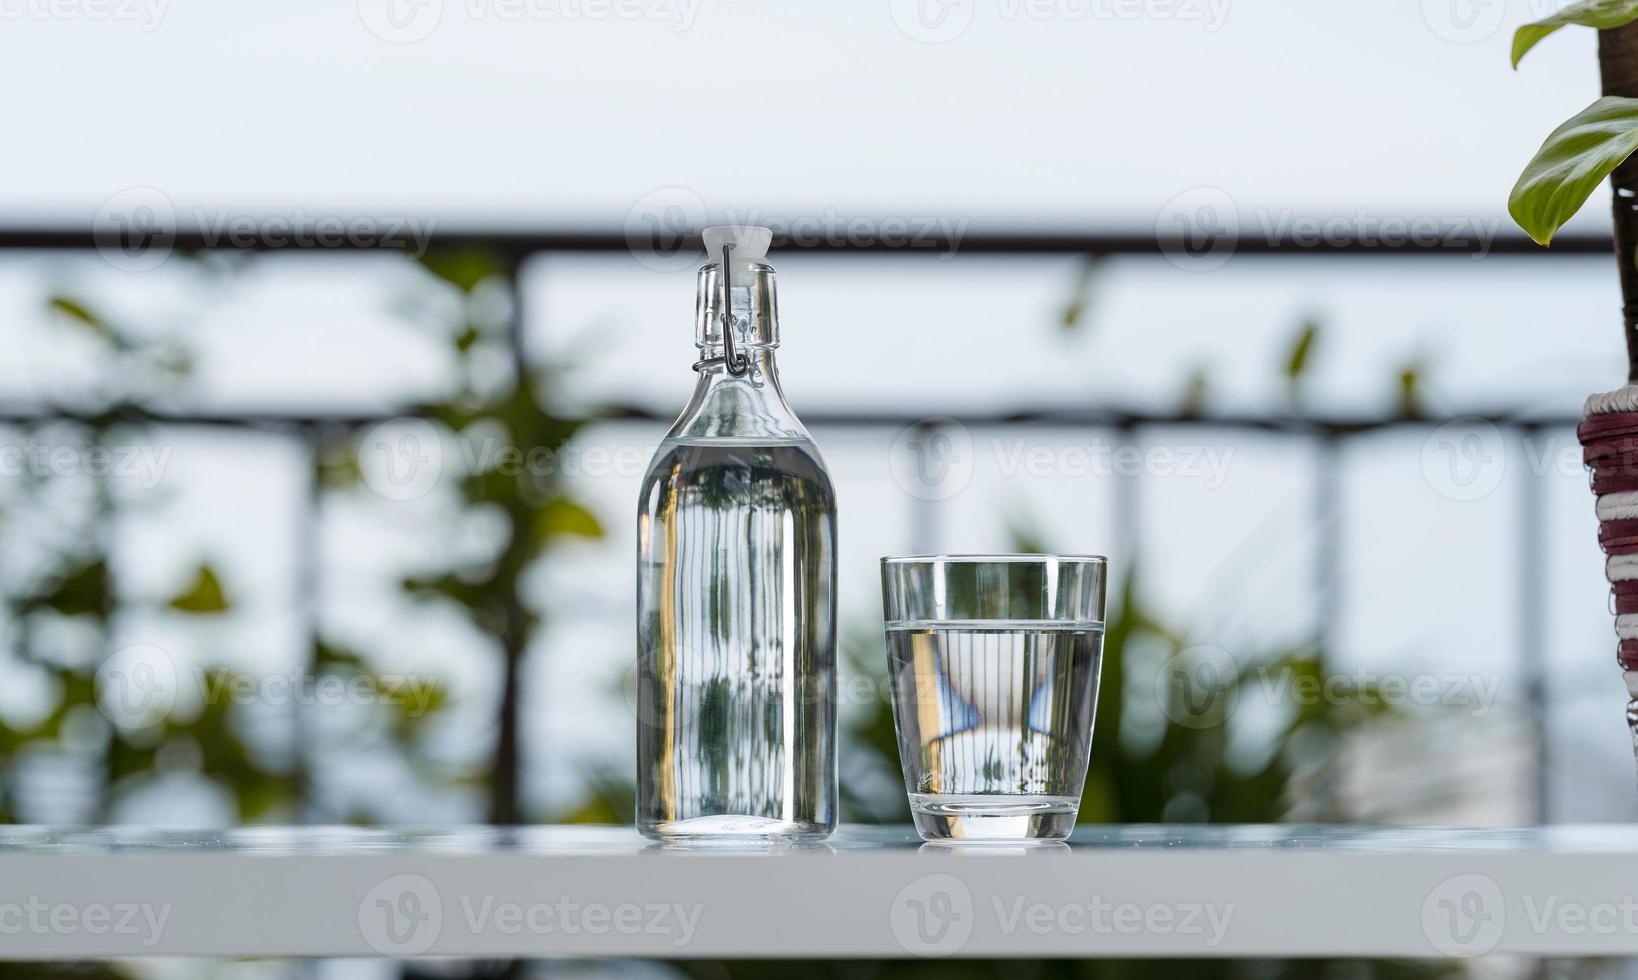 drink waterfles met glas op tafel in tuinhuis foto